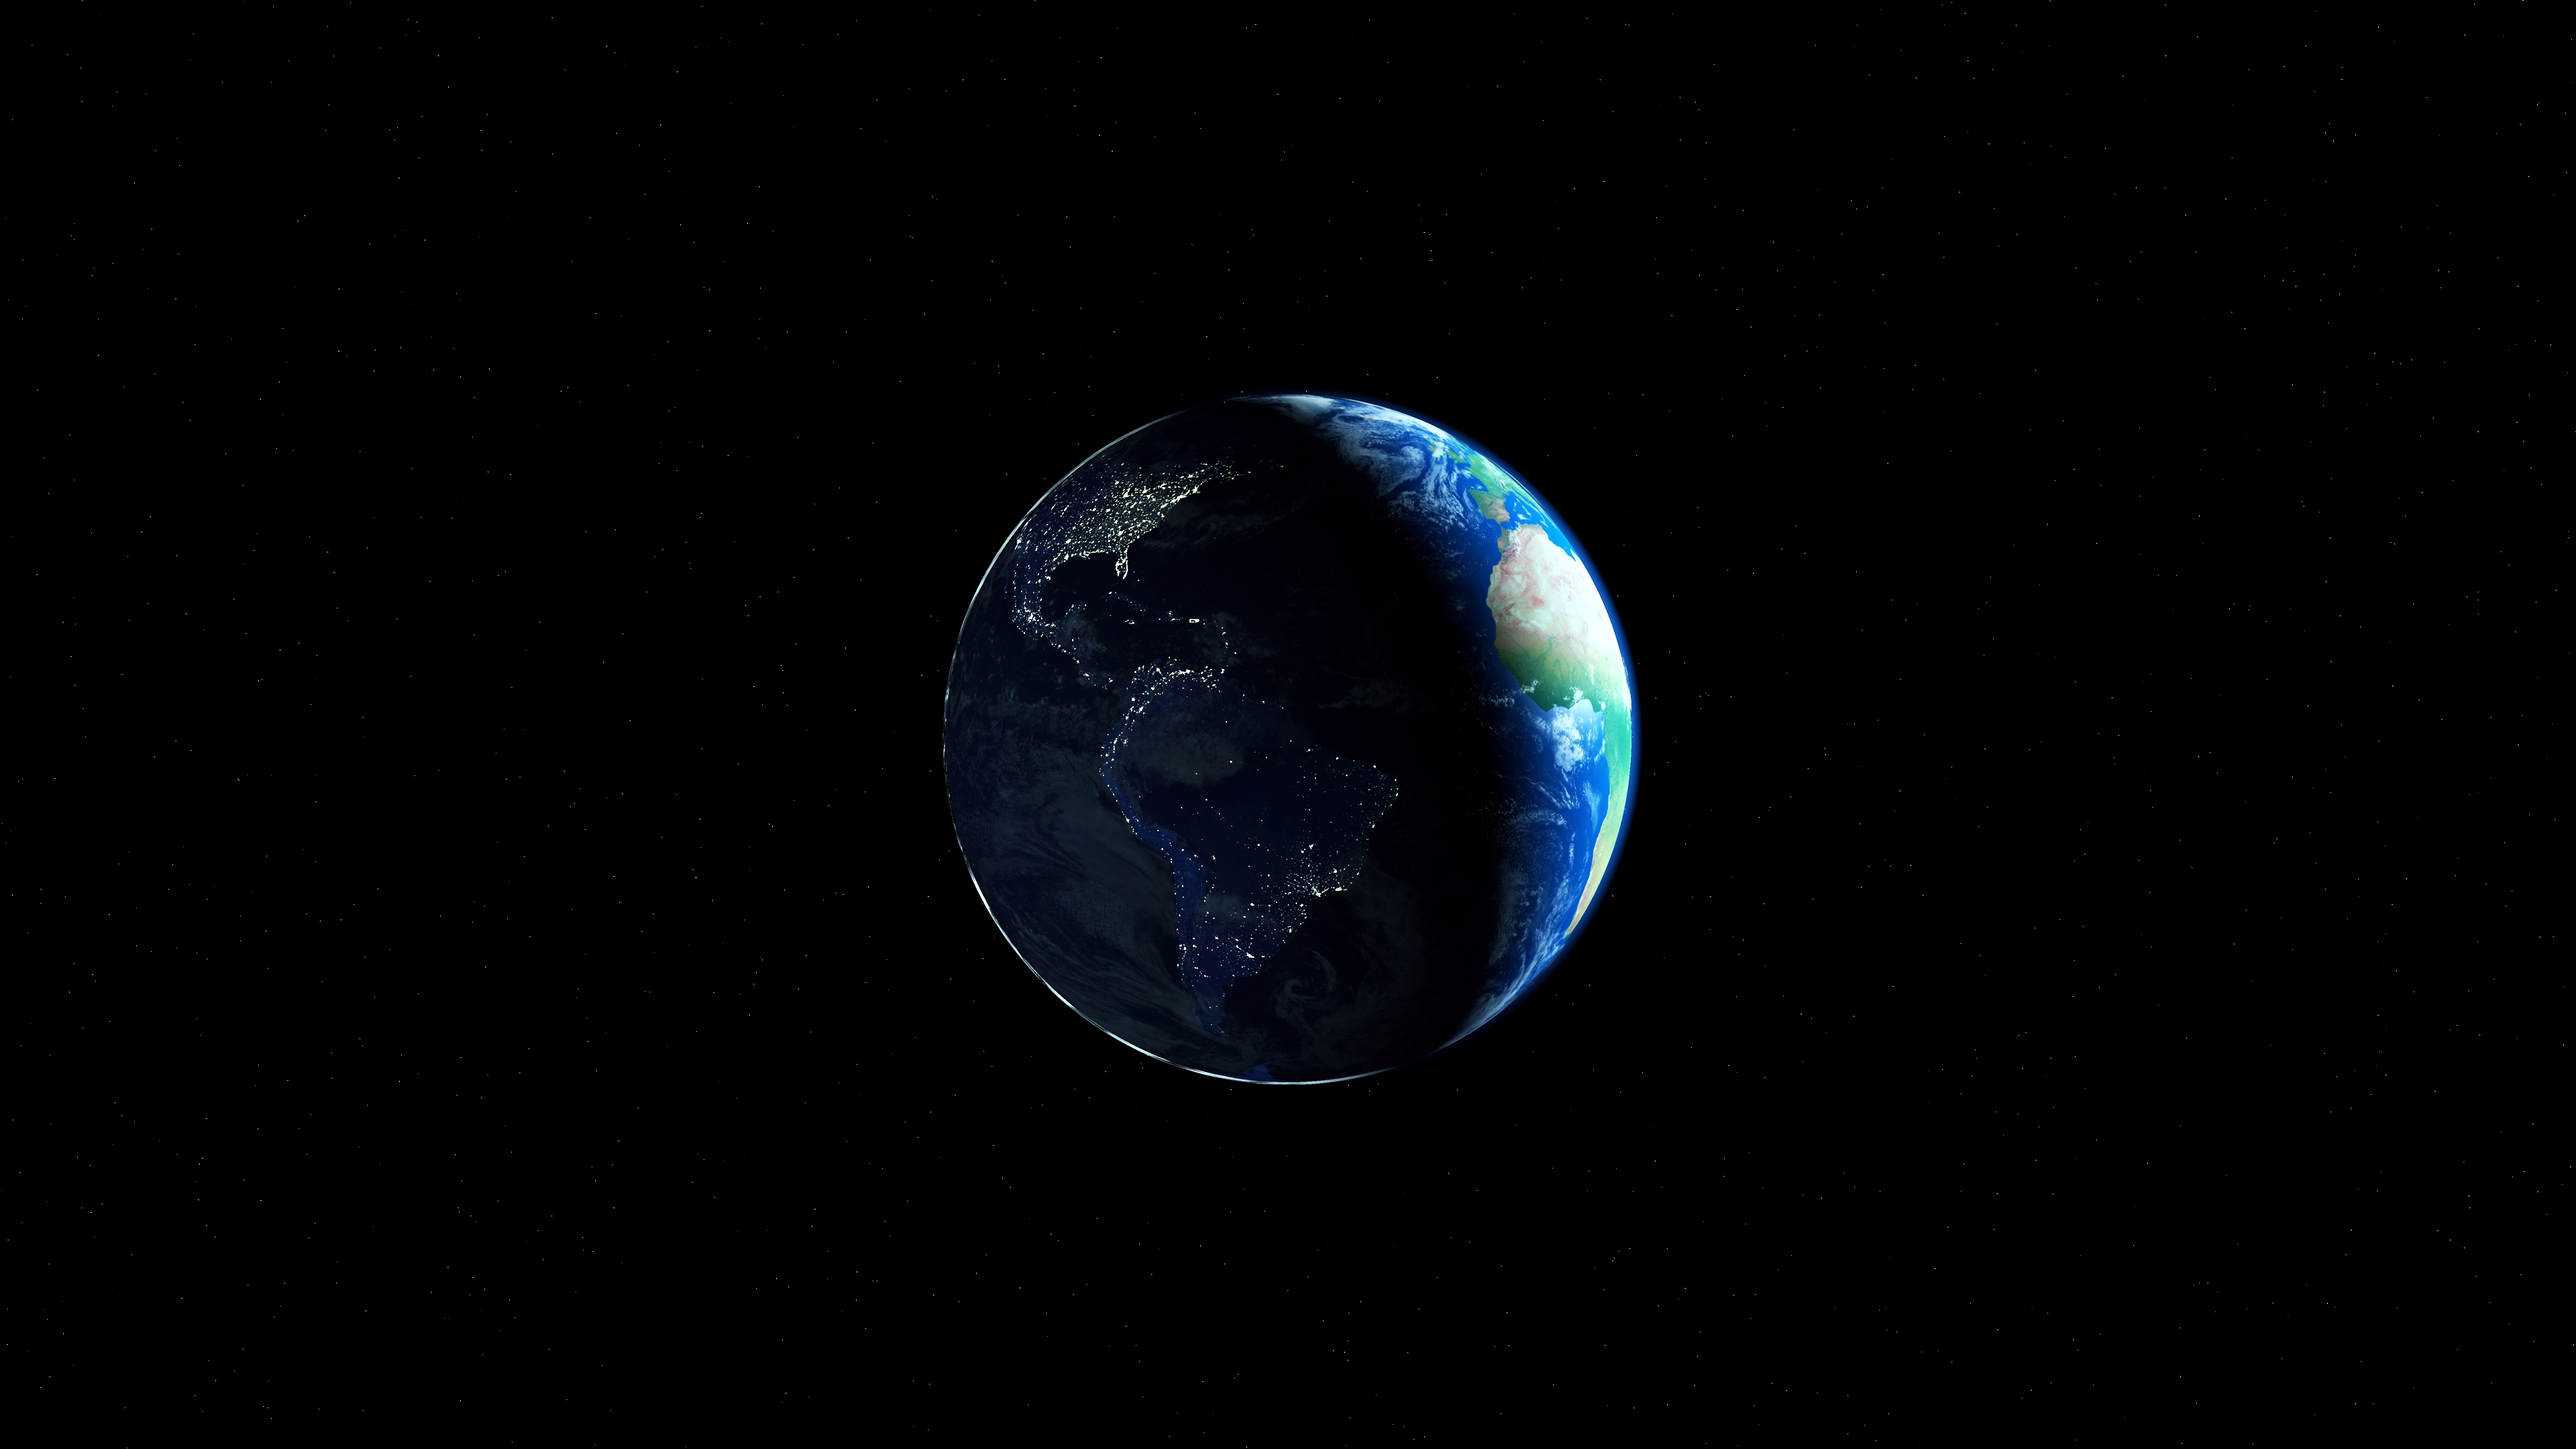 Фото обои земля космос звезды - бесплатные картинки на Fonwall